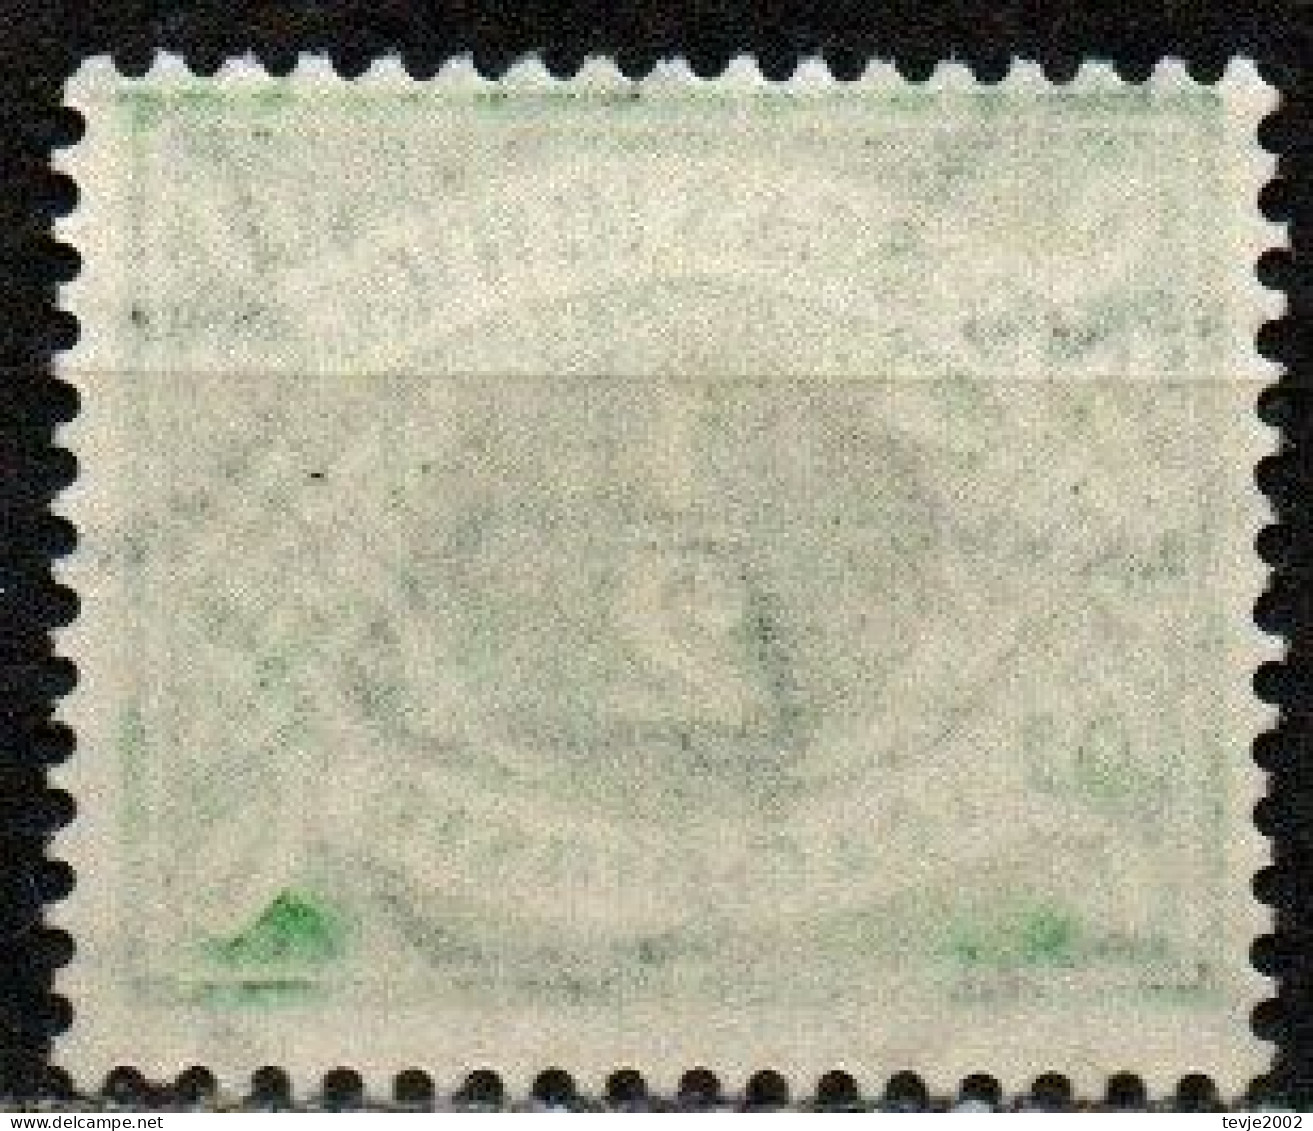 Irland Eire 1942 - Portomarke Mi.Nr. 5 - Postfrisch MNH - Segnatasse